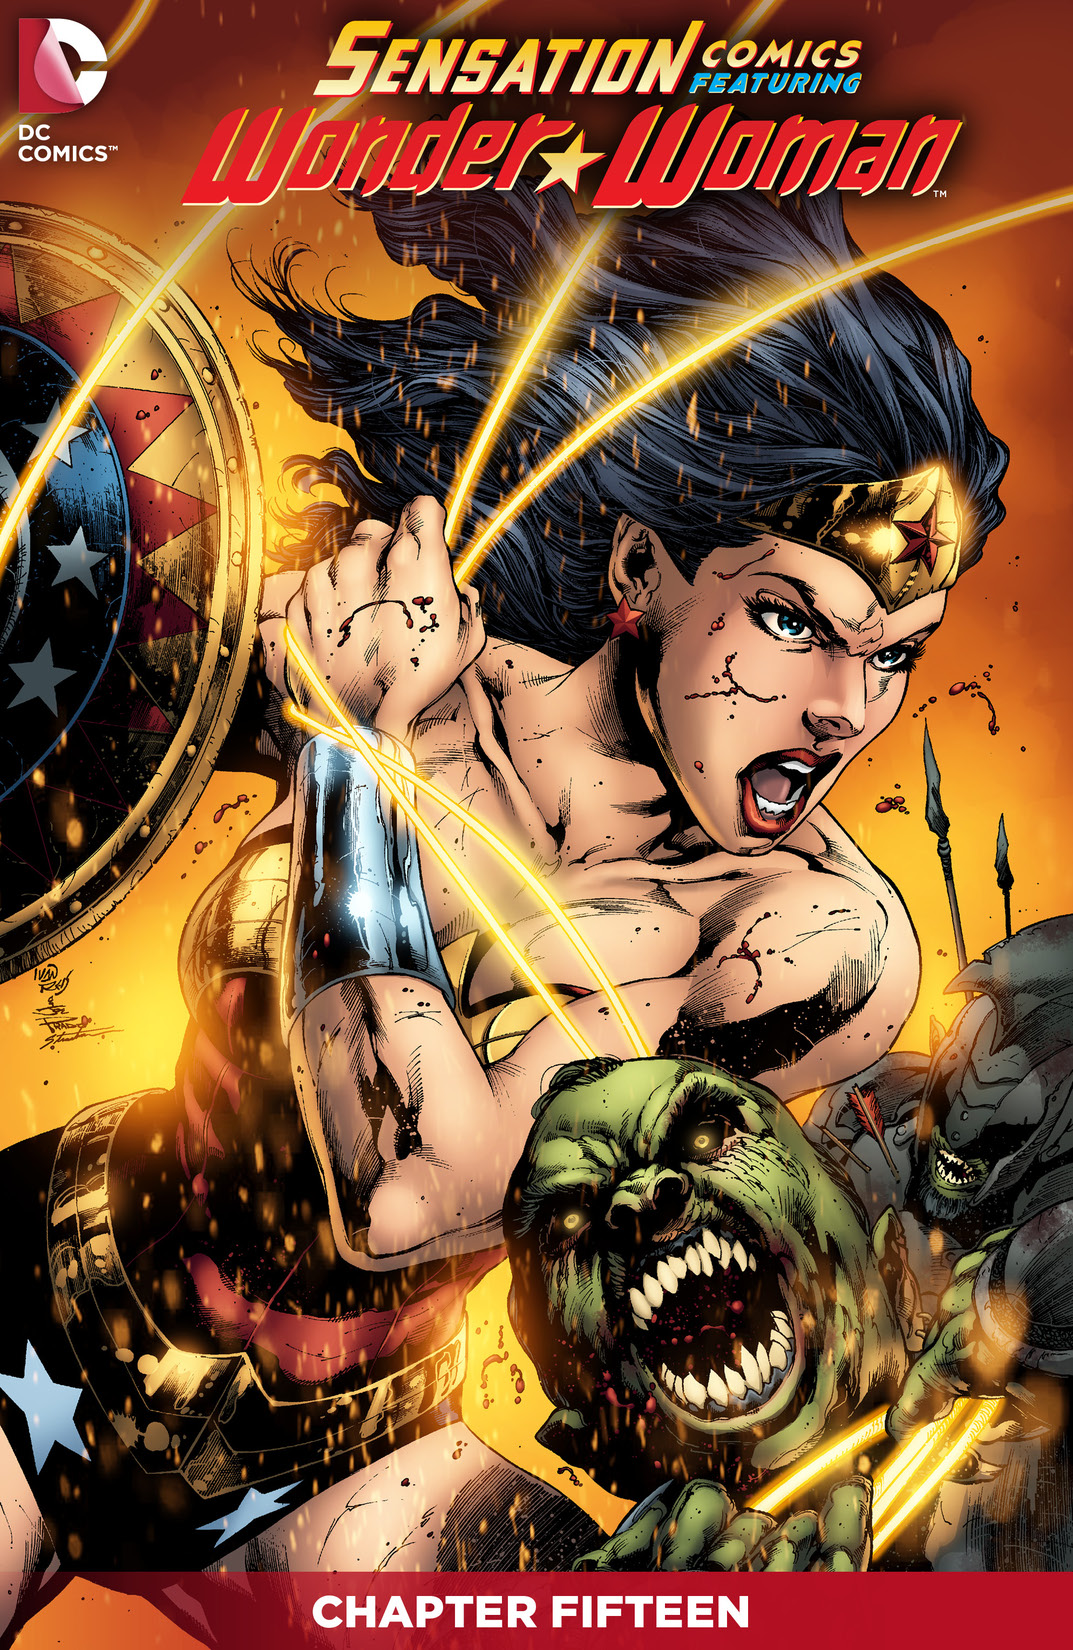 Sensation Comics Featuring Wonder Woman #15 preview images